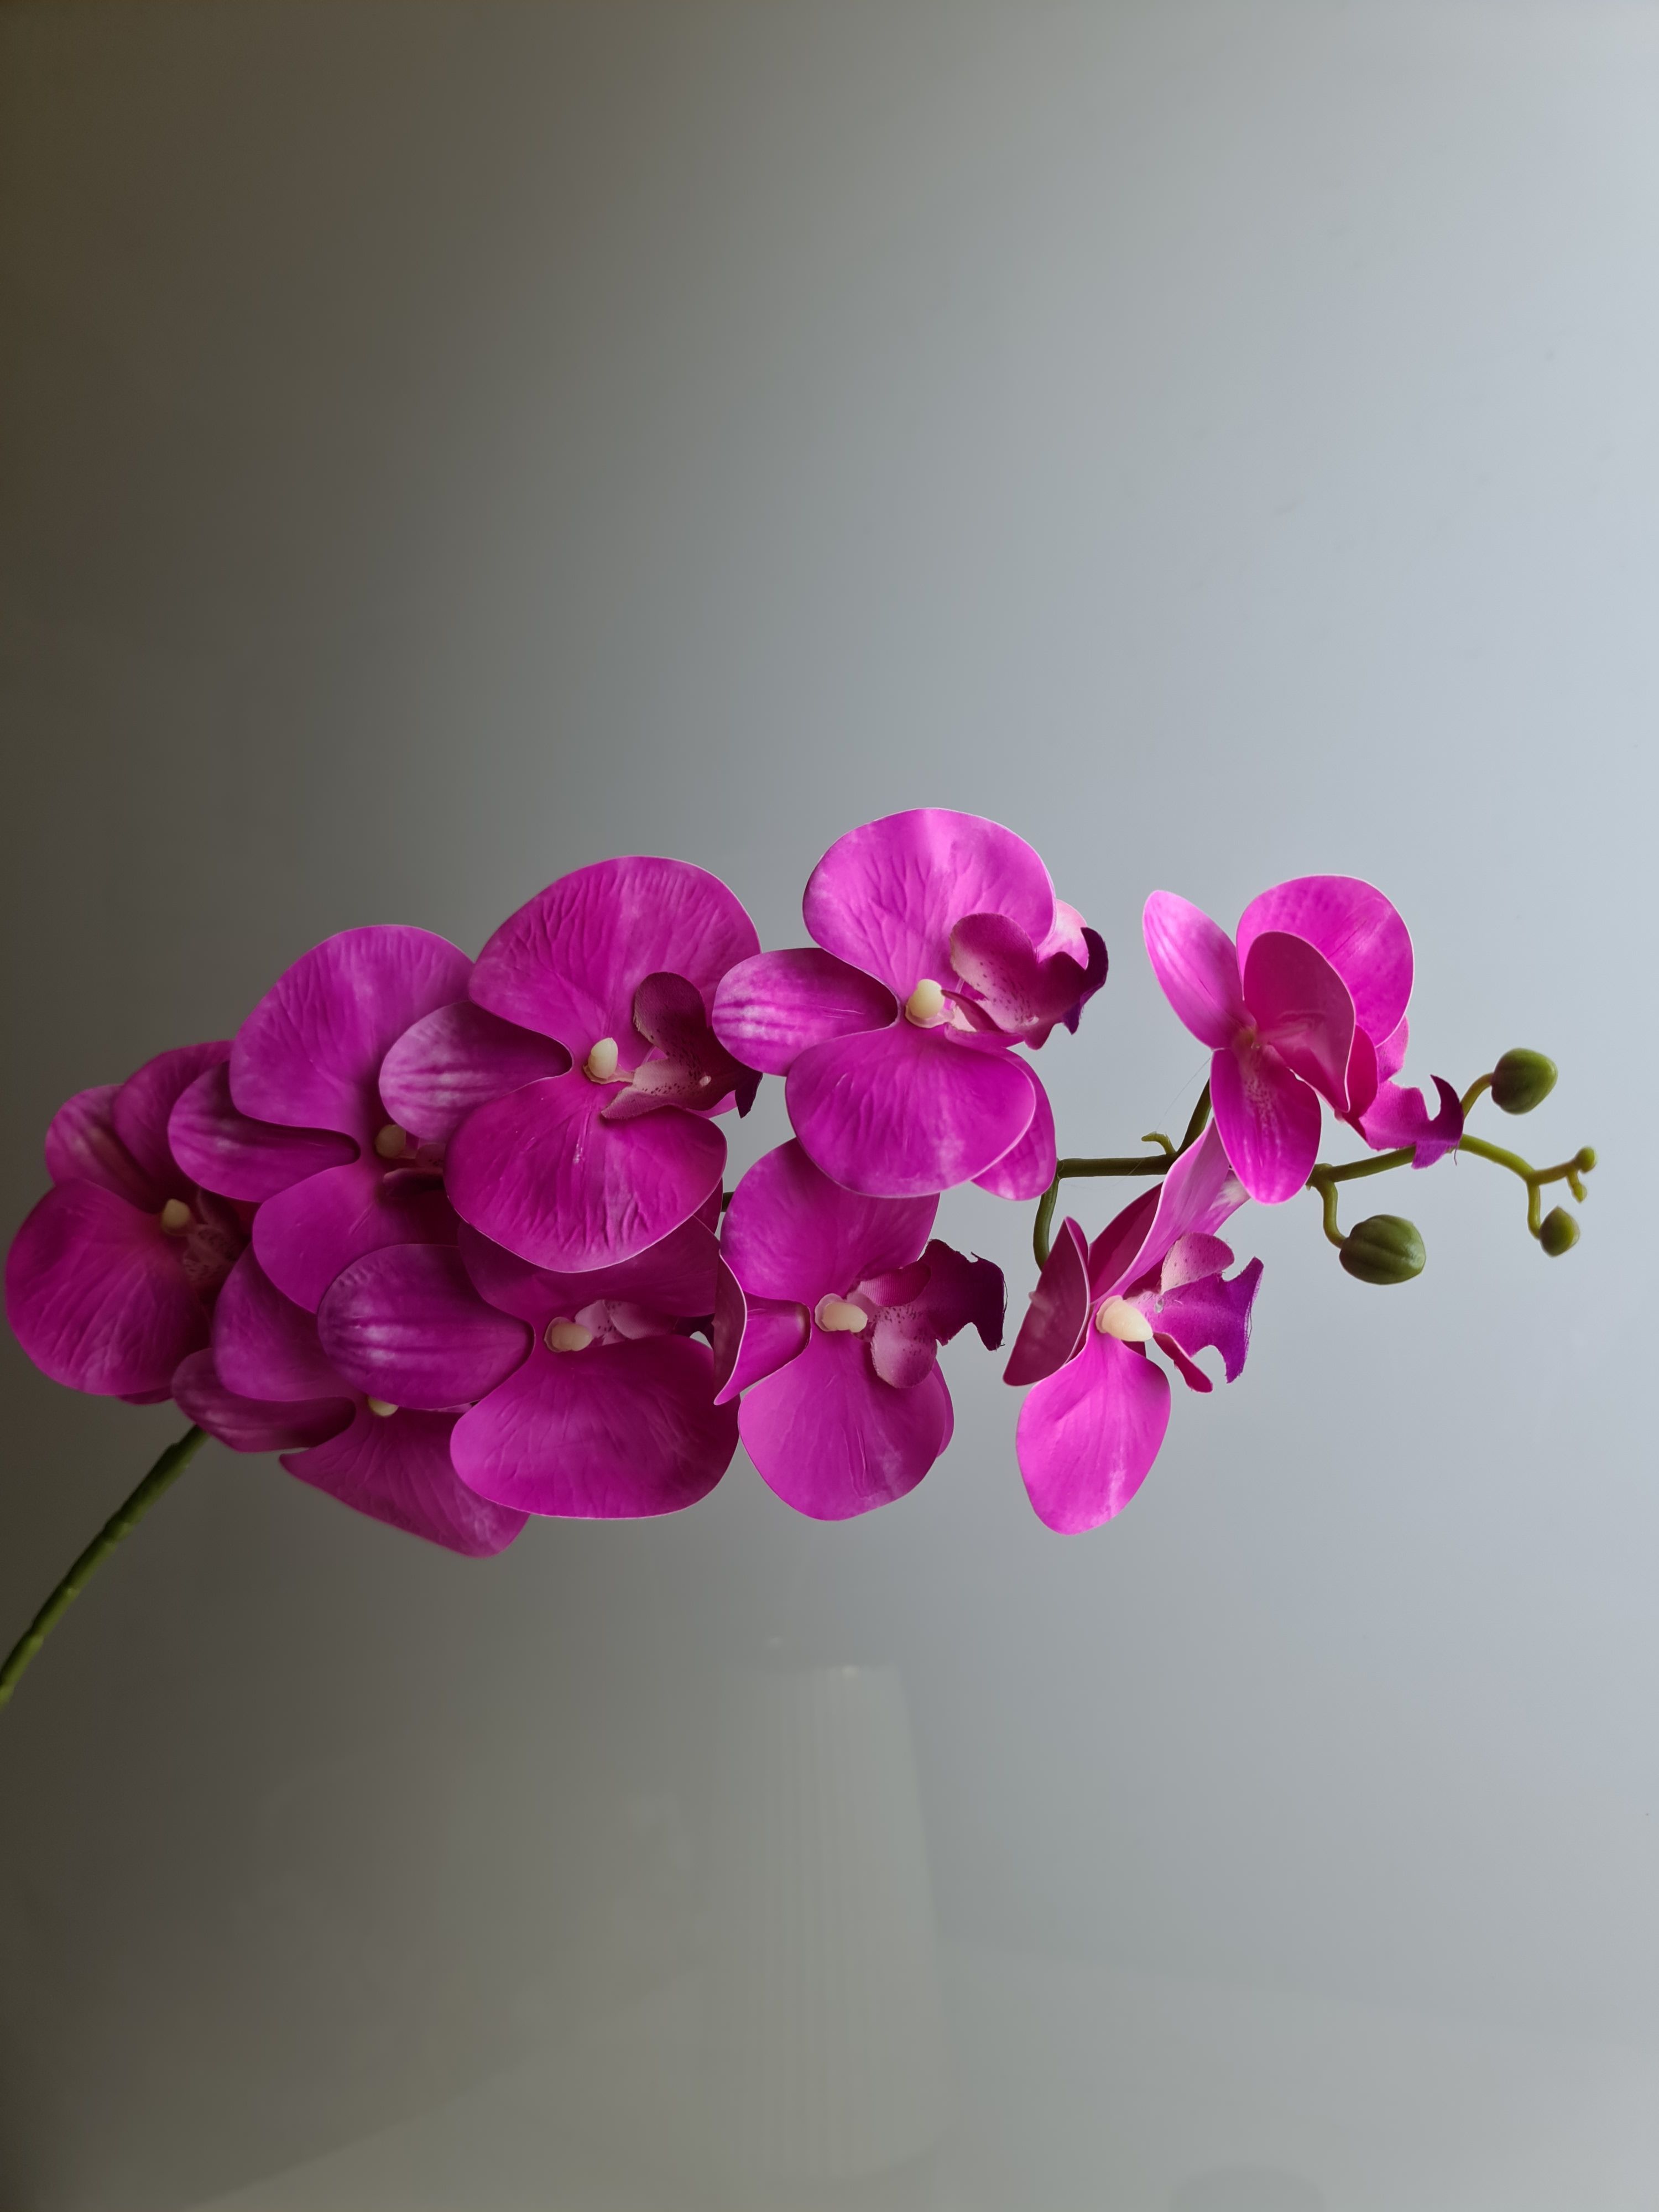 Причины почему у орхидеи вянут цветы и бутоны. Проблемы цветения. | Страна Мастеров